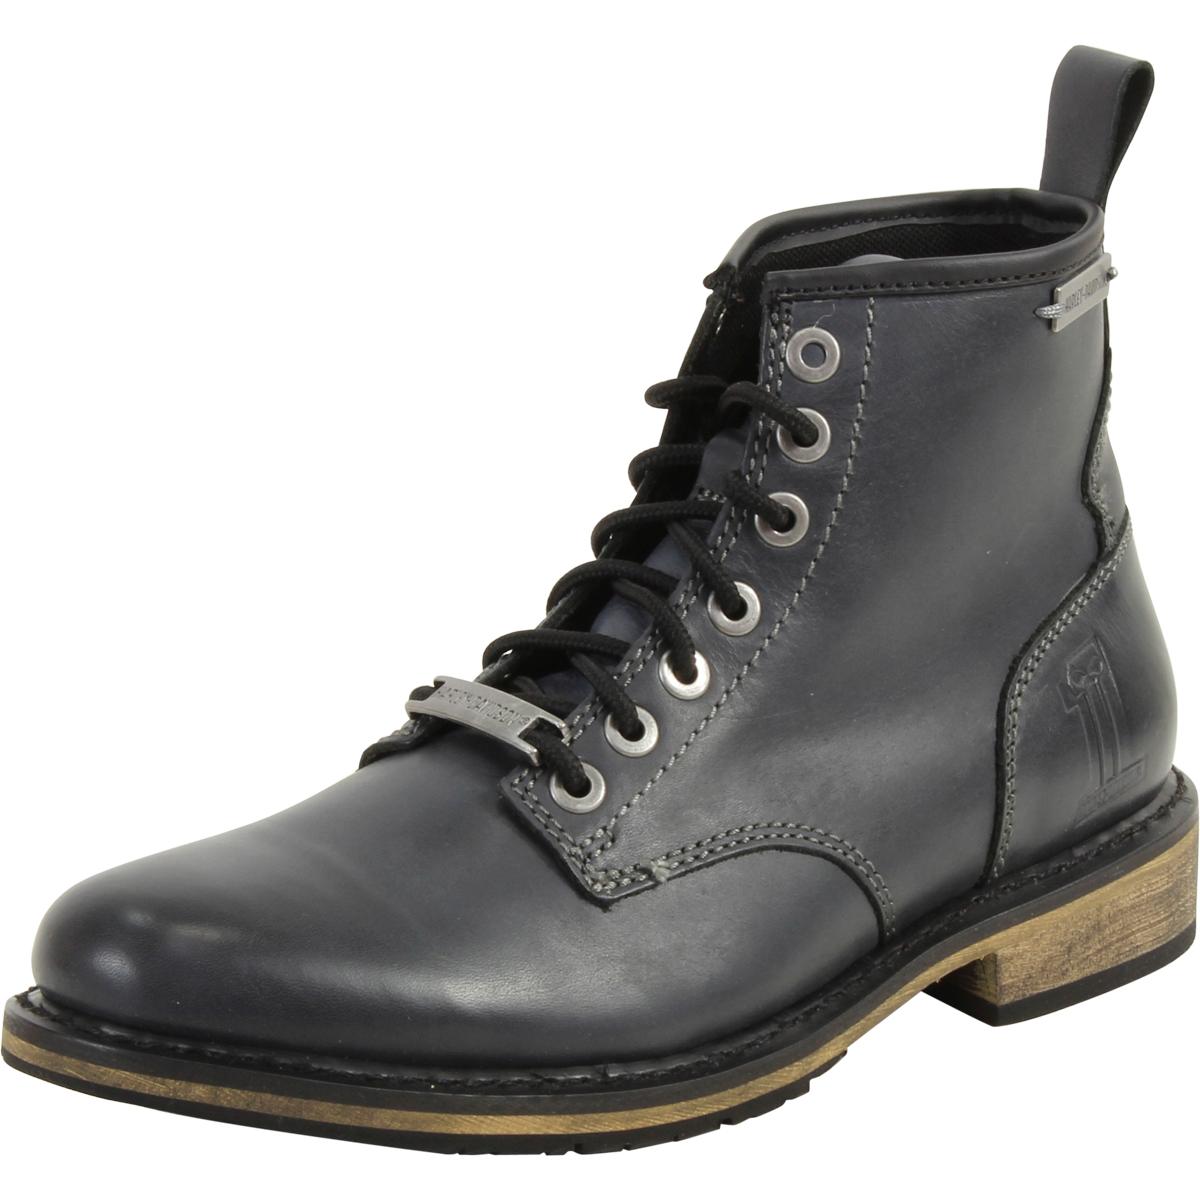 Harley Davidson Black Label Men's Darrol Boots Shoes - Black - 9.5 D(M) US